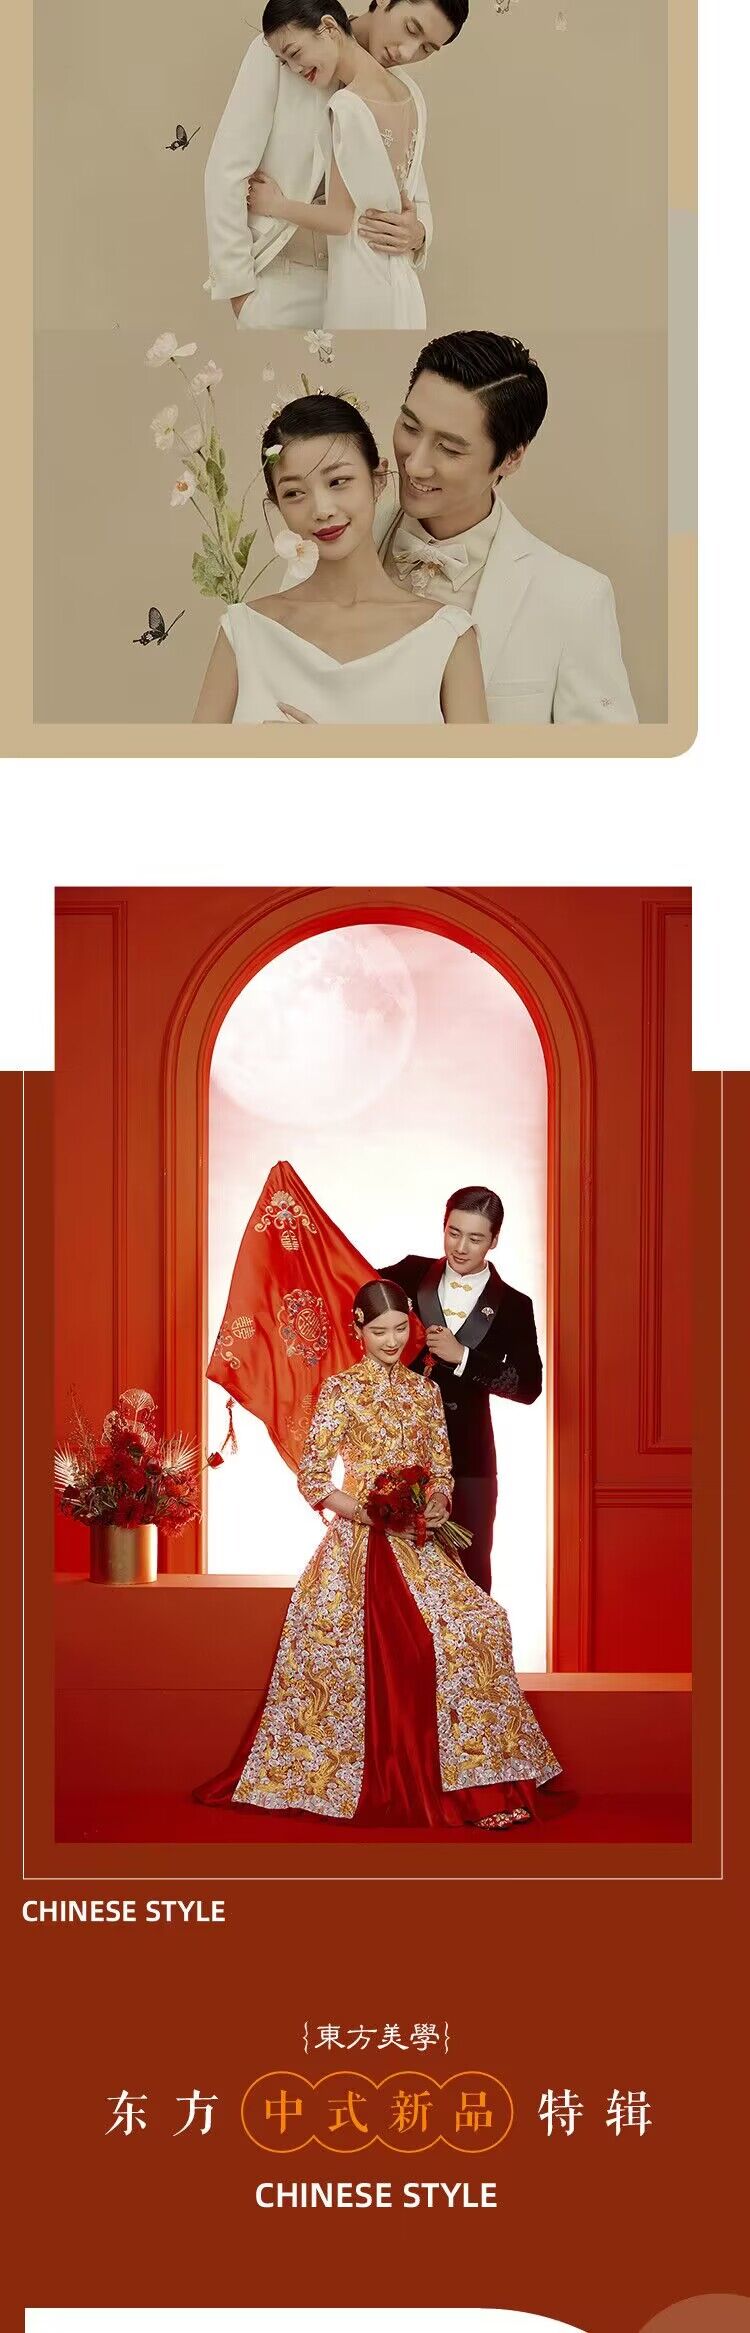 中式风婚纱照丨情感纪实